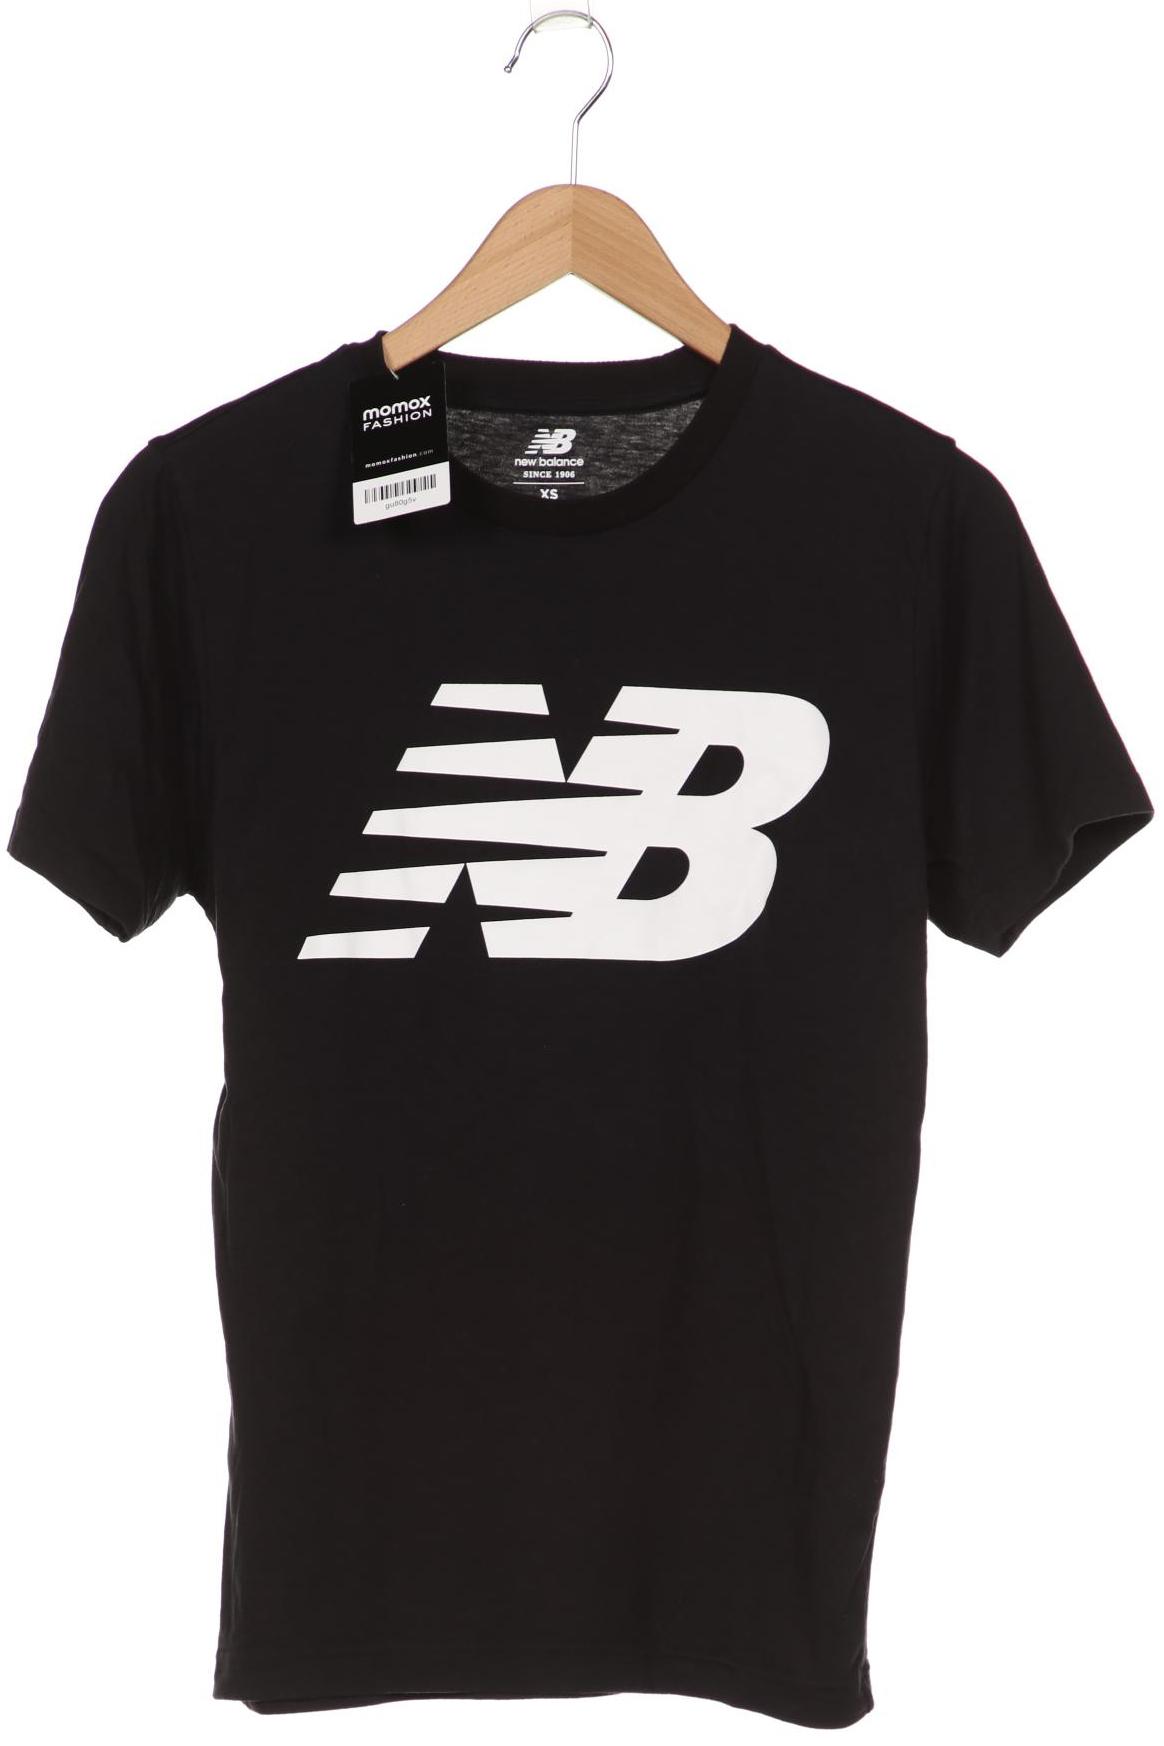 New Balance Herren T-Shirt, schwarz von New Balance